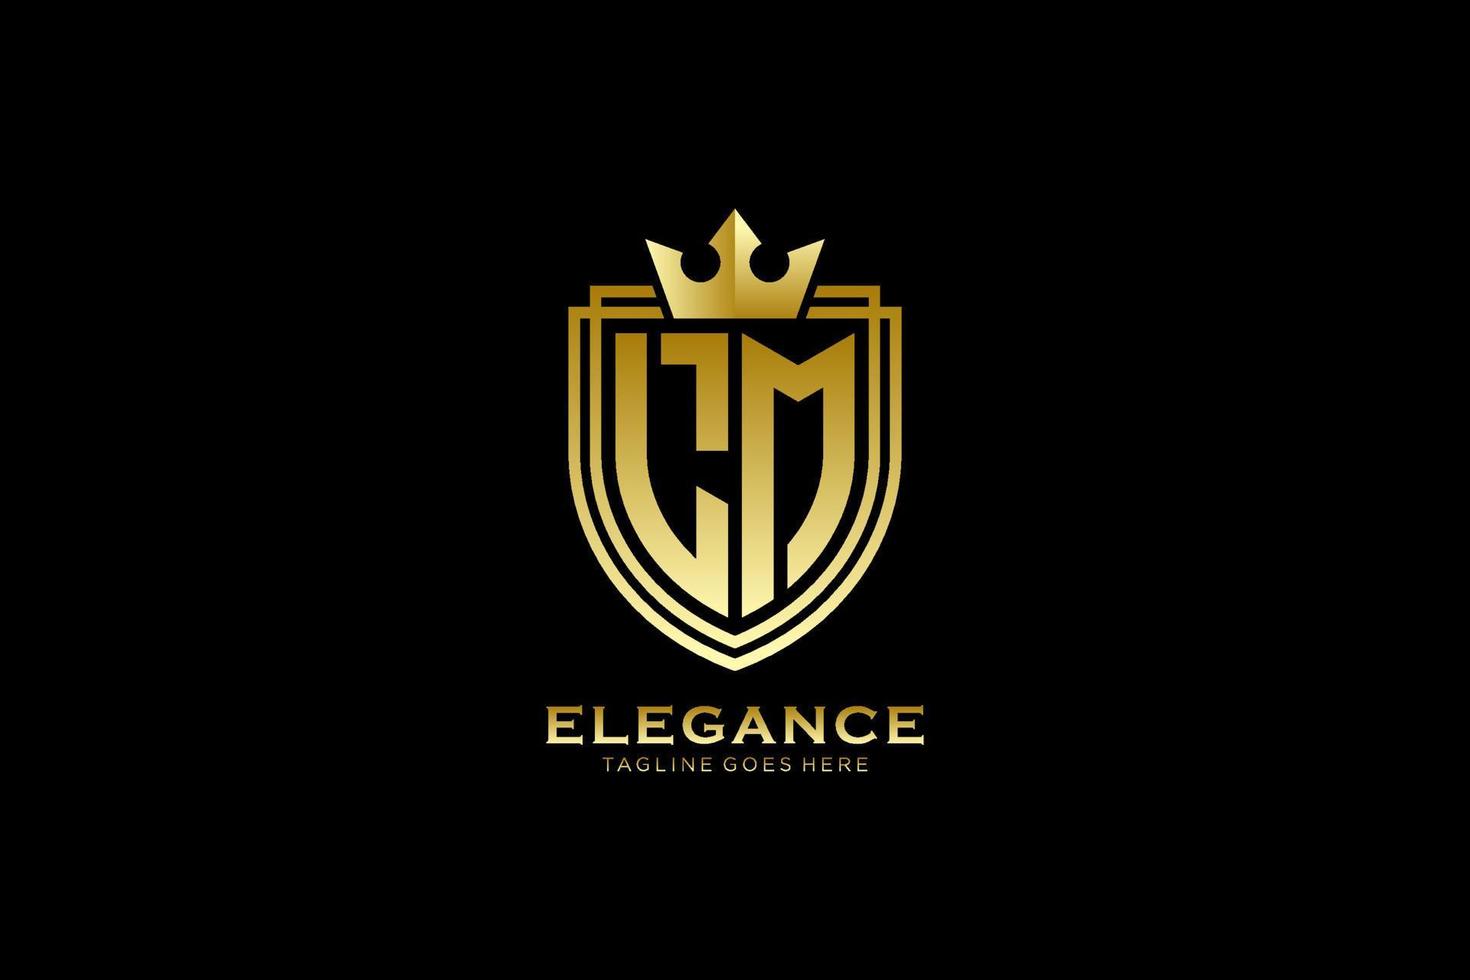 eerste lm elegant luxe monogram logo of insigne sjabloon met scrollt en Koninklijk kroon - perfect voor luxueus branding projecten vector